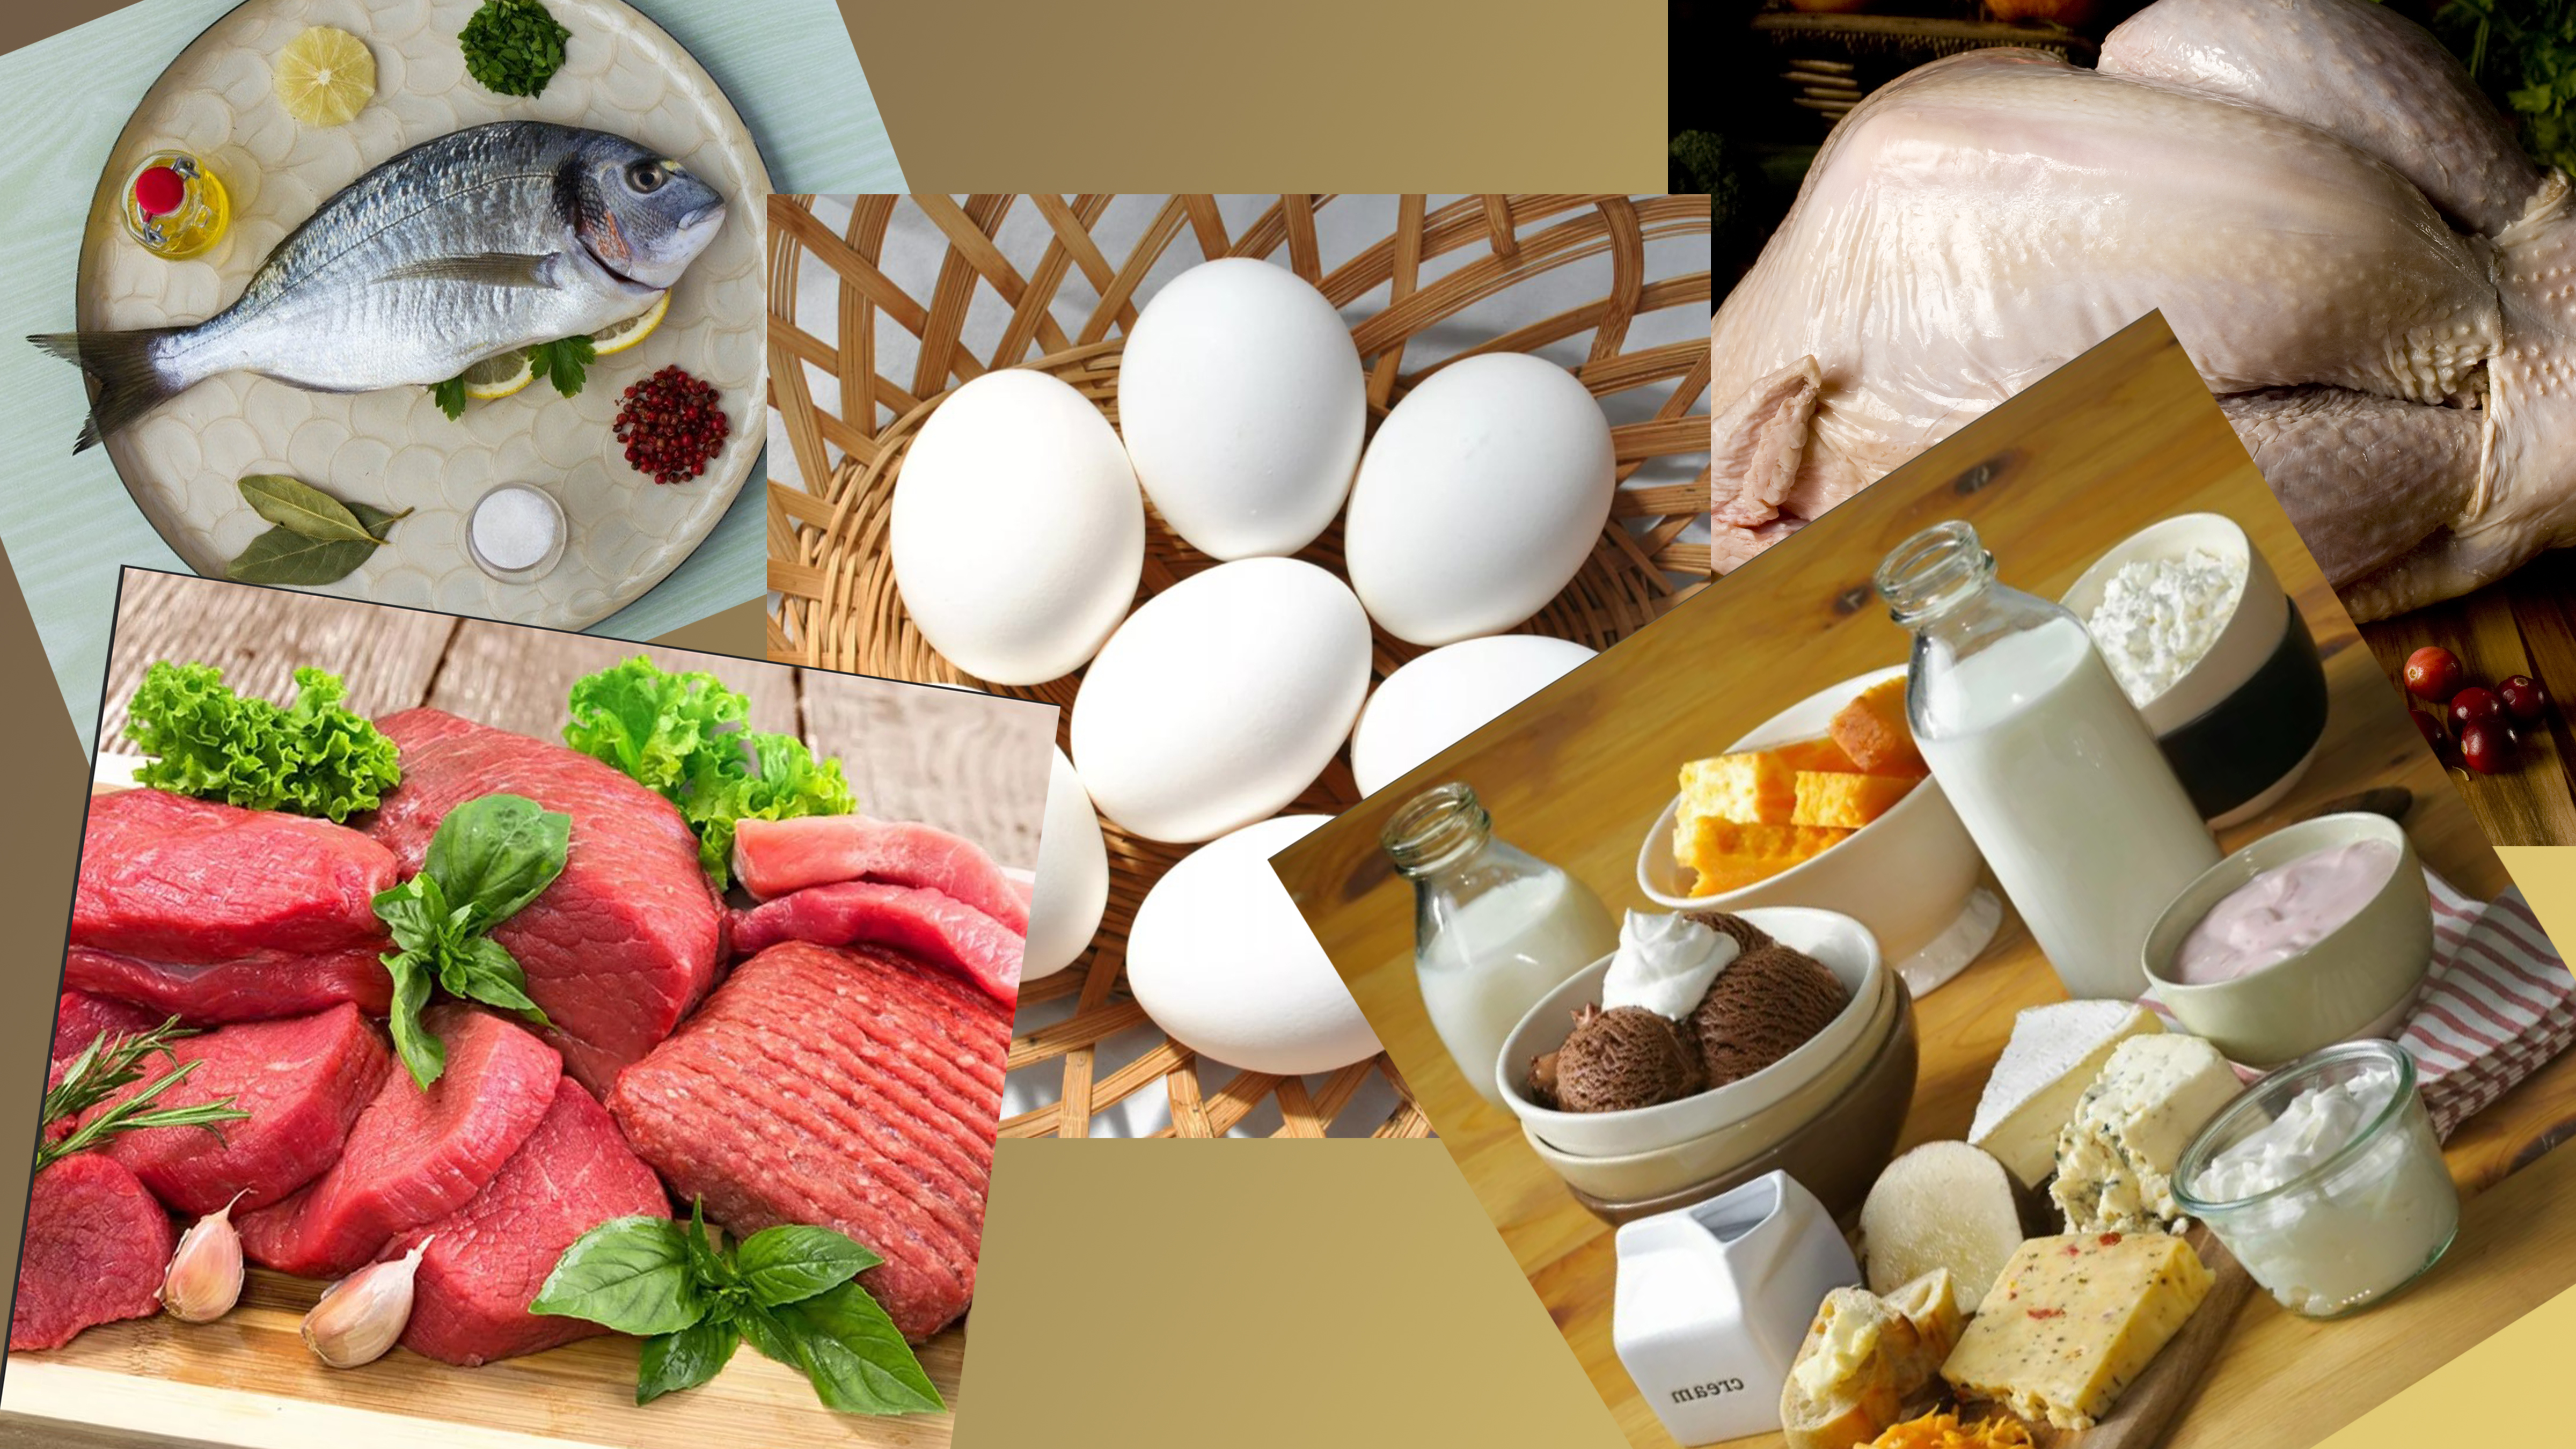 Белки содержатся в животной продукции: мясе, рыбе, молочных продуктах, яйце и частично в растительной пище.